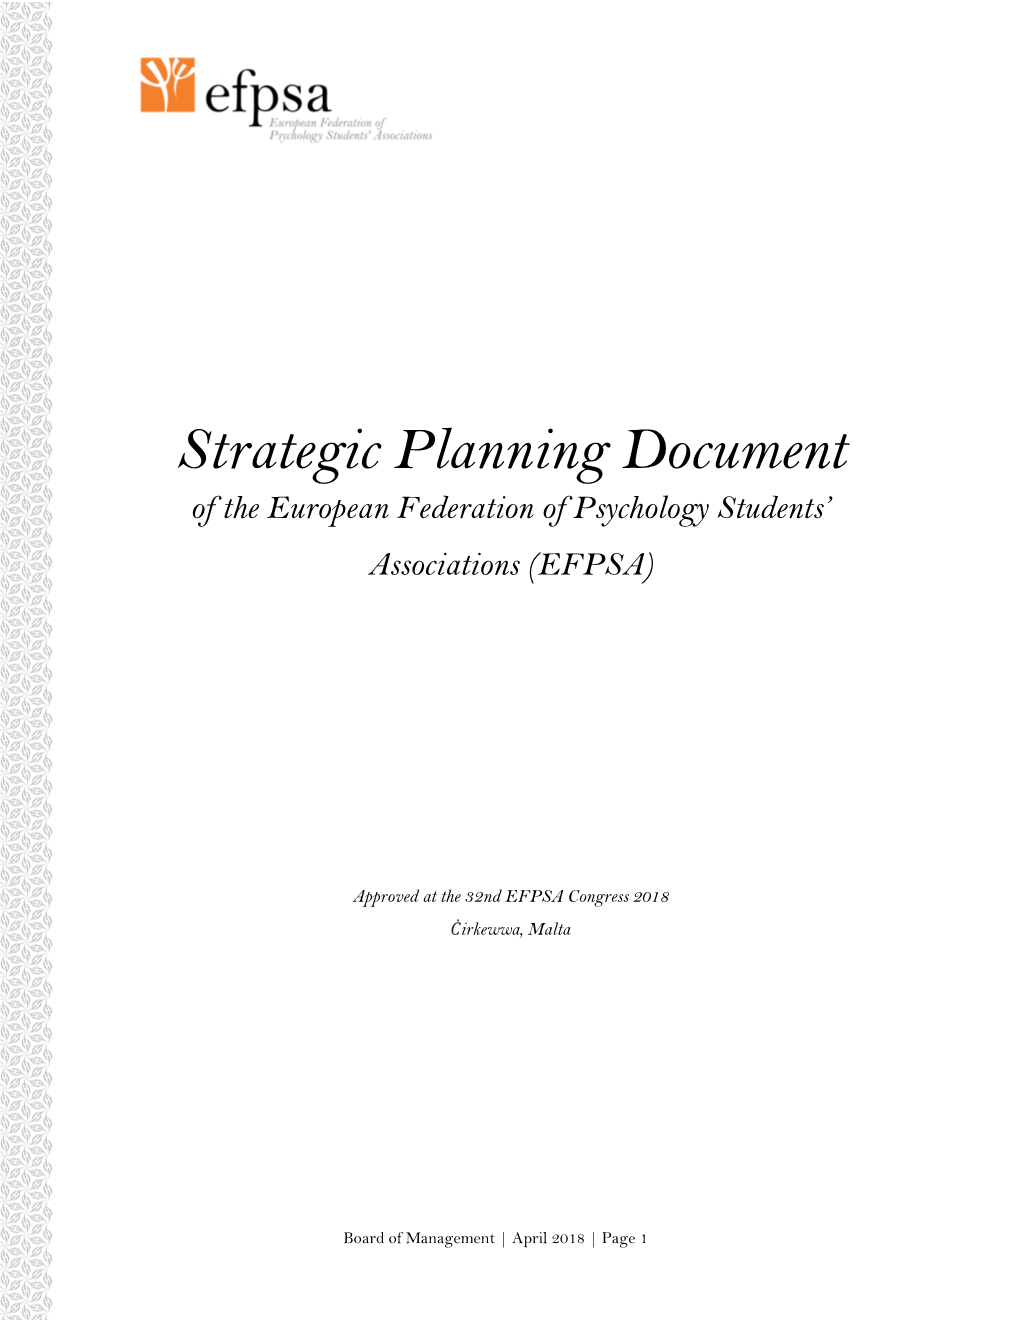 EFPSA Strategic Planning